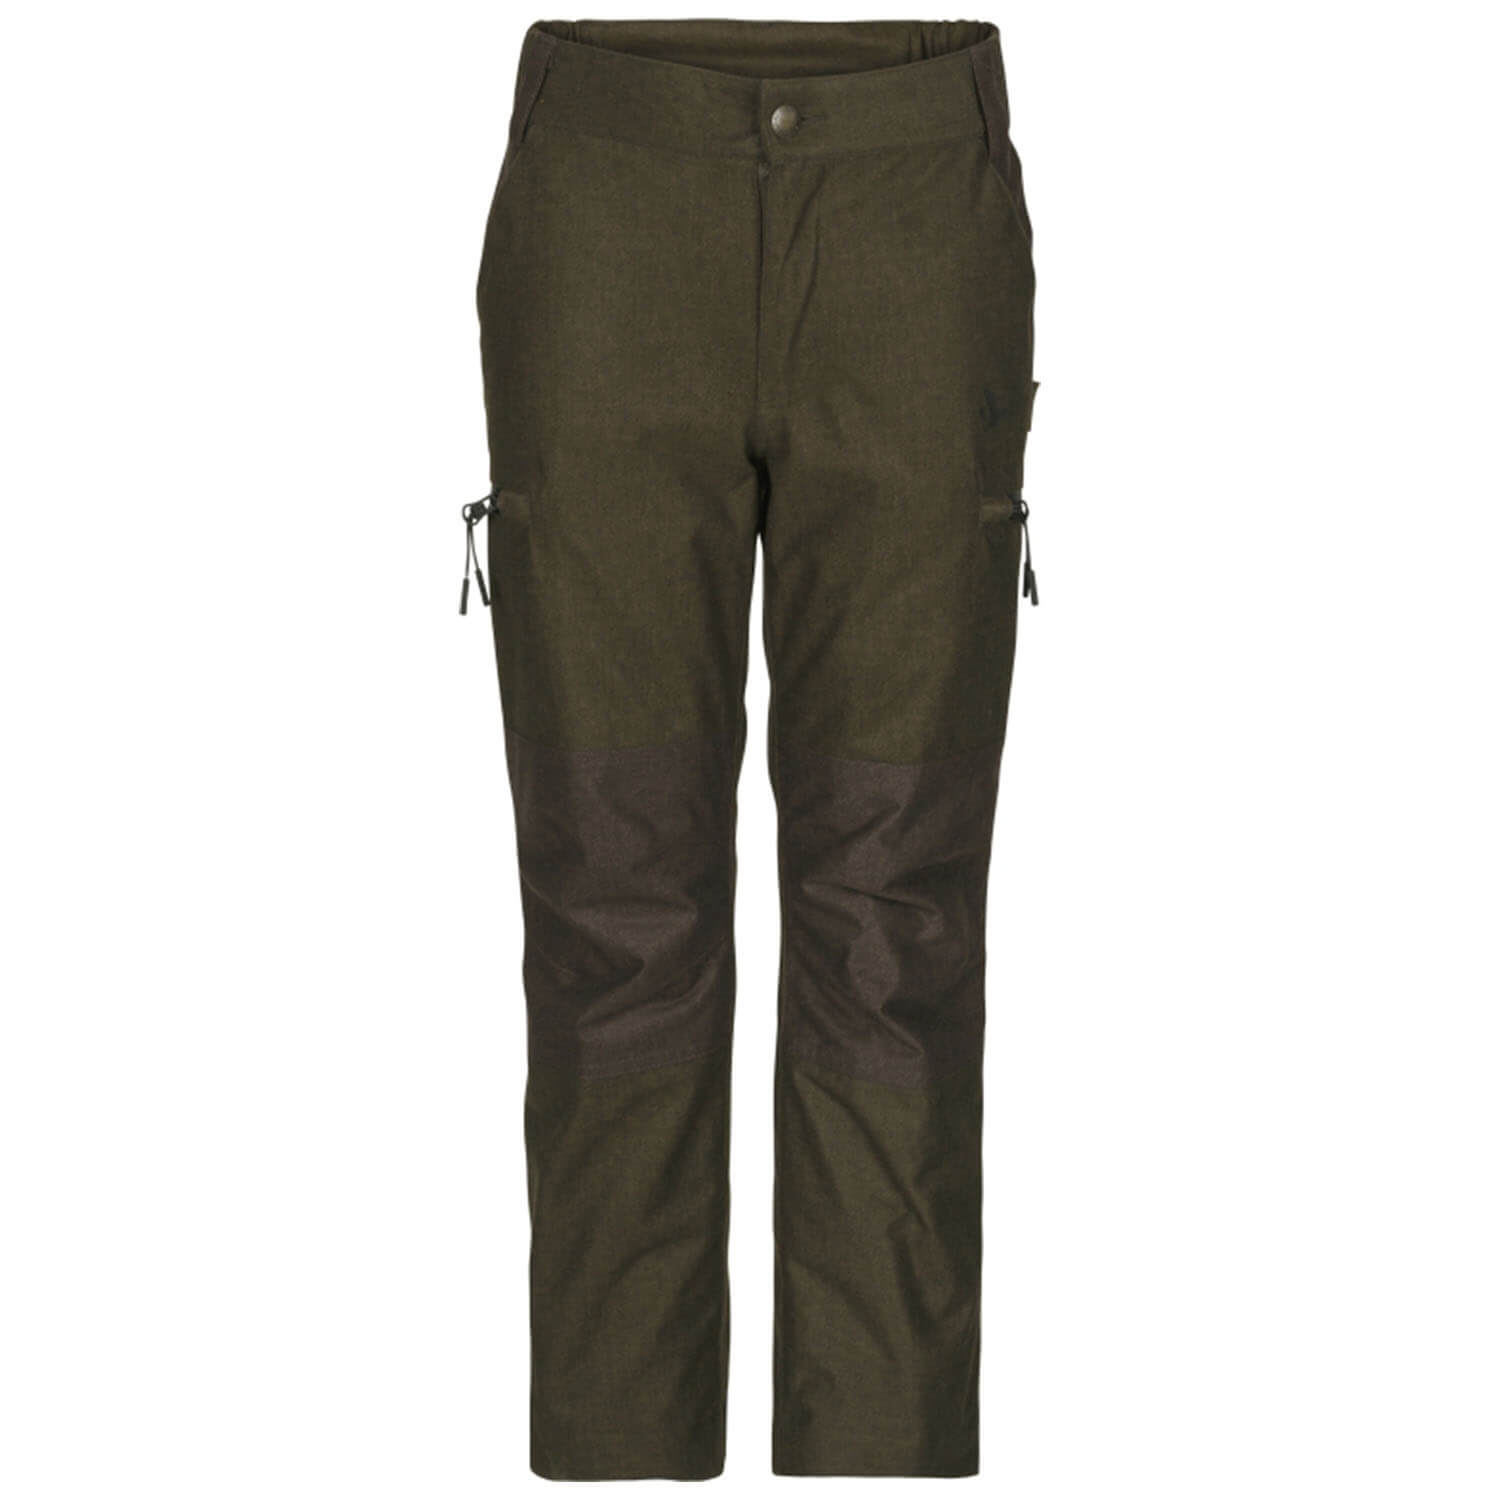  Seeland Children's hunting trousers Avail Junior (Pine Green Melange)